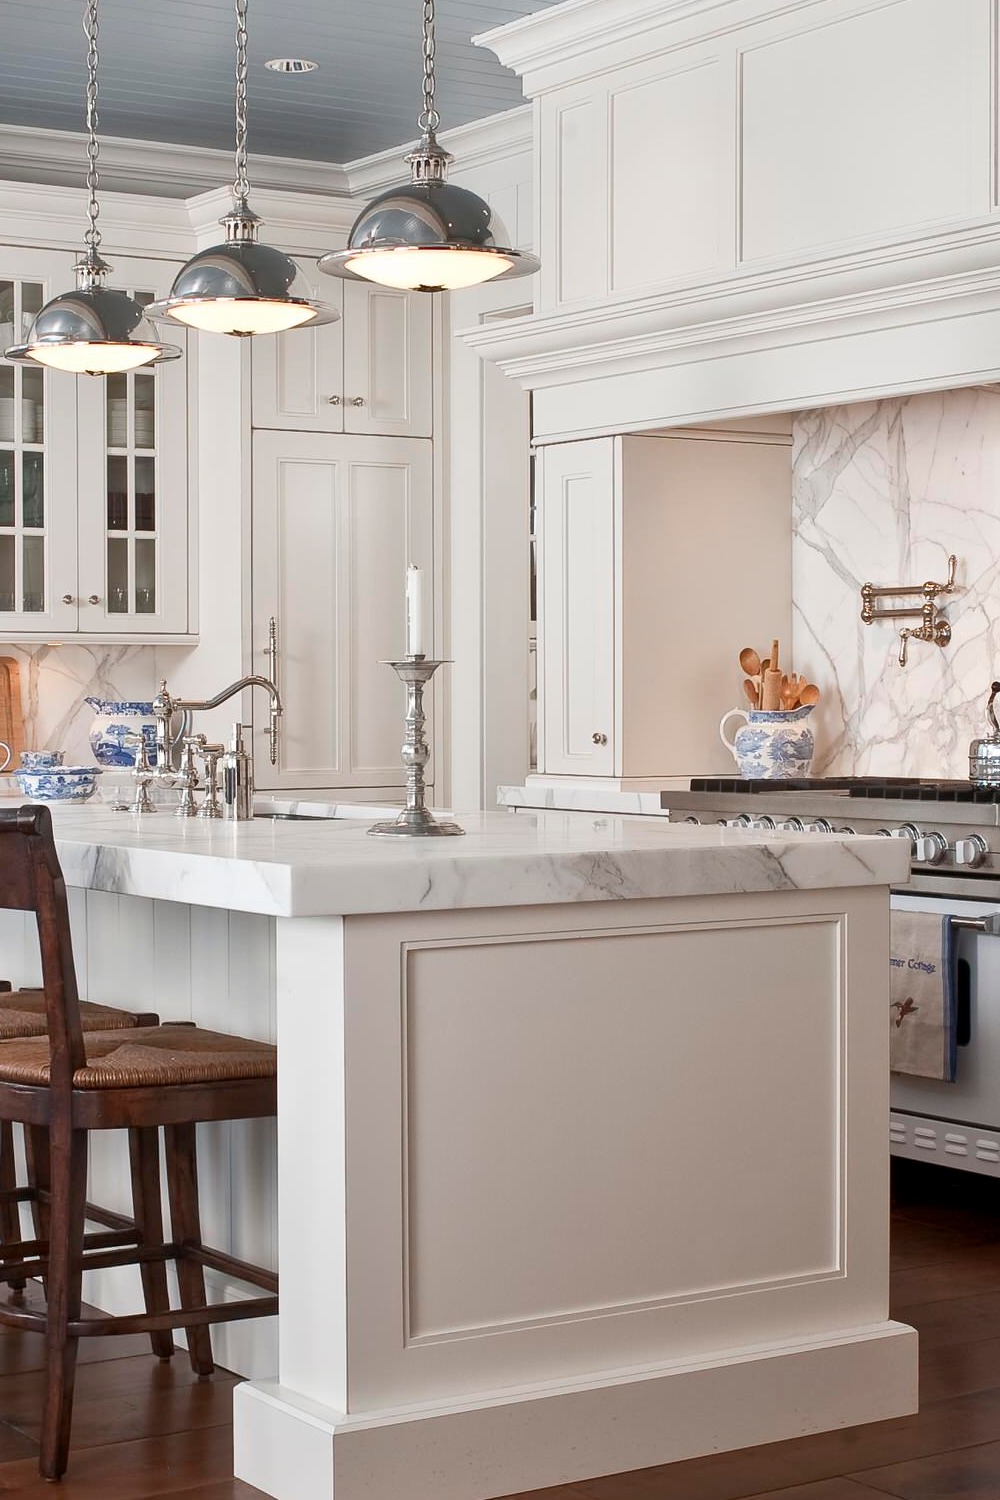 White Marble Countertops Stone Slab Full High Backsplash Cabinets Pendant Lighting